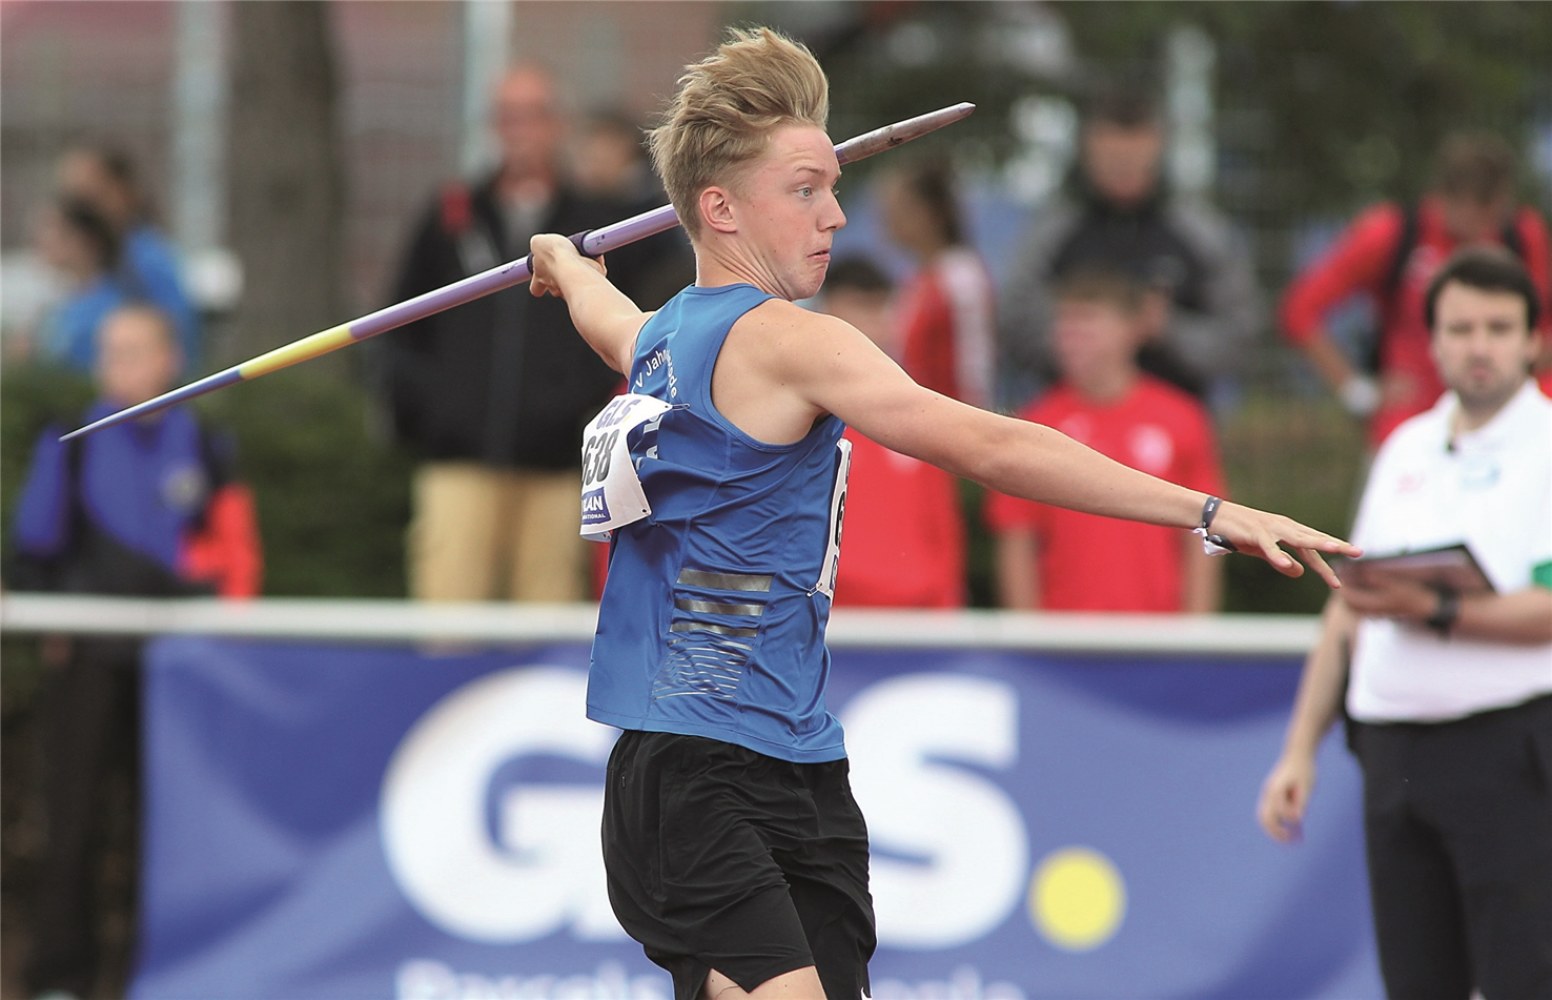 Mika Funck gelingt großer Wurf bei der Leichtathletik-Junioren-DM in Rostock - Lokales